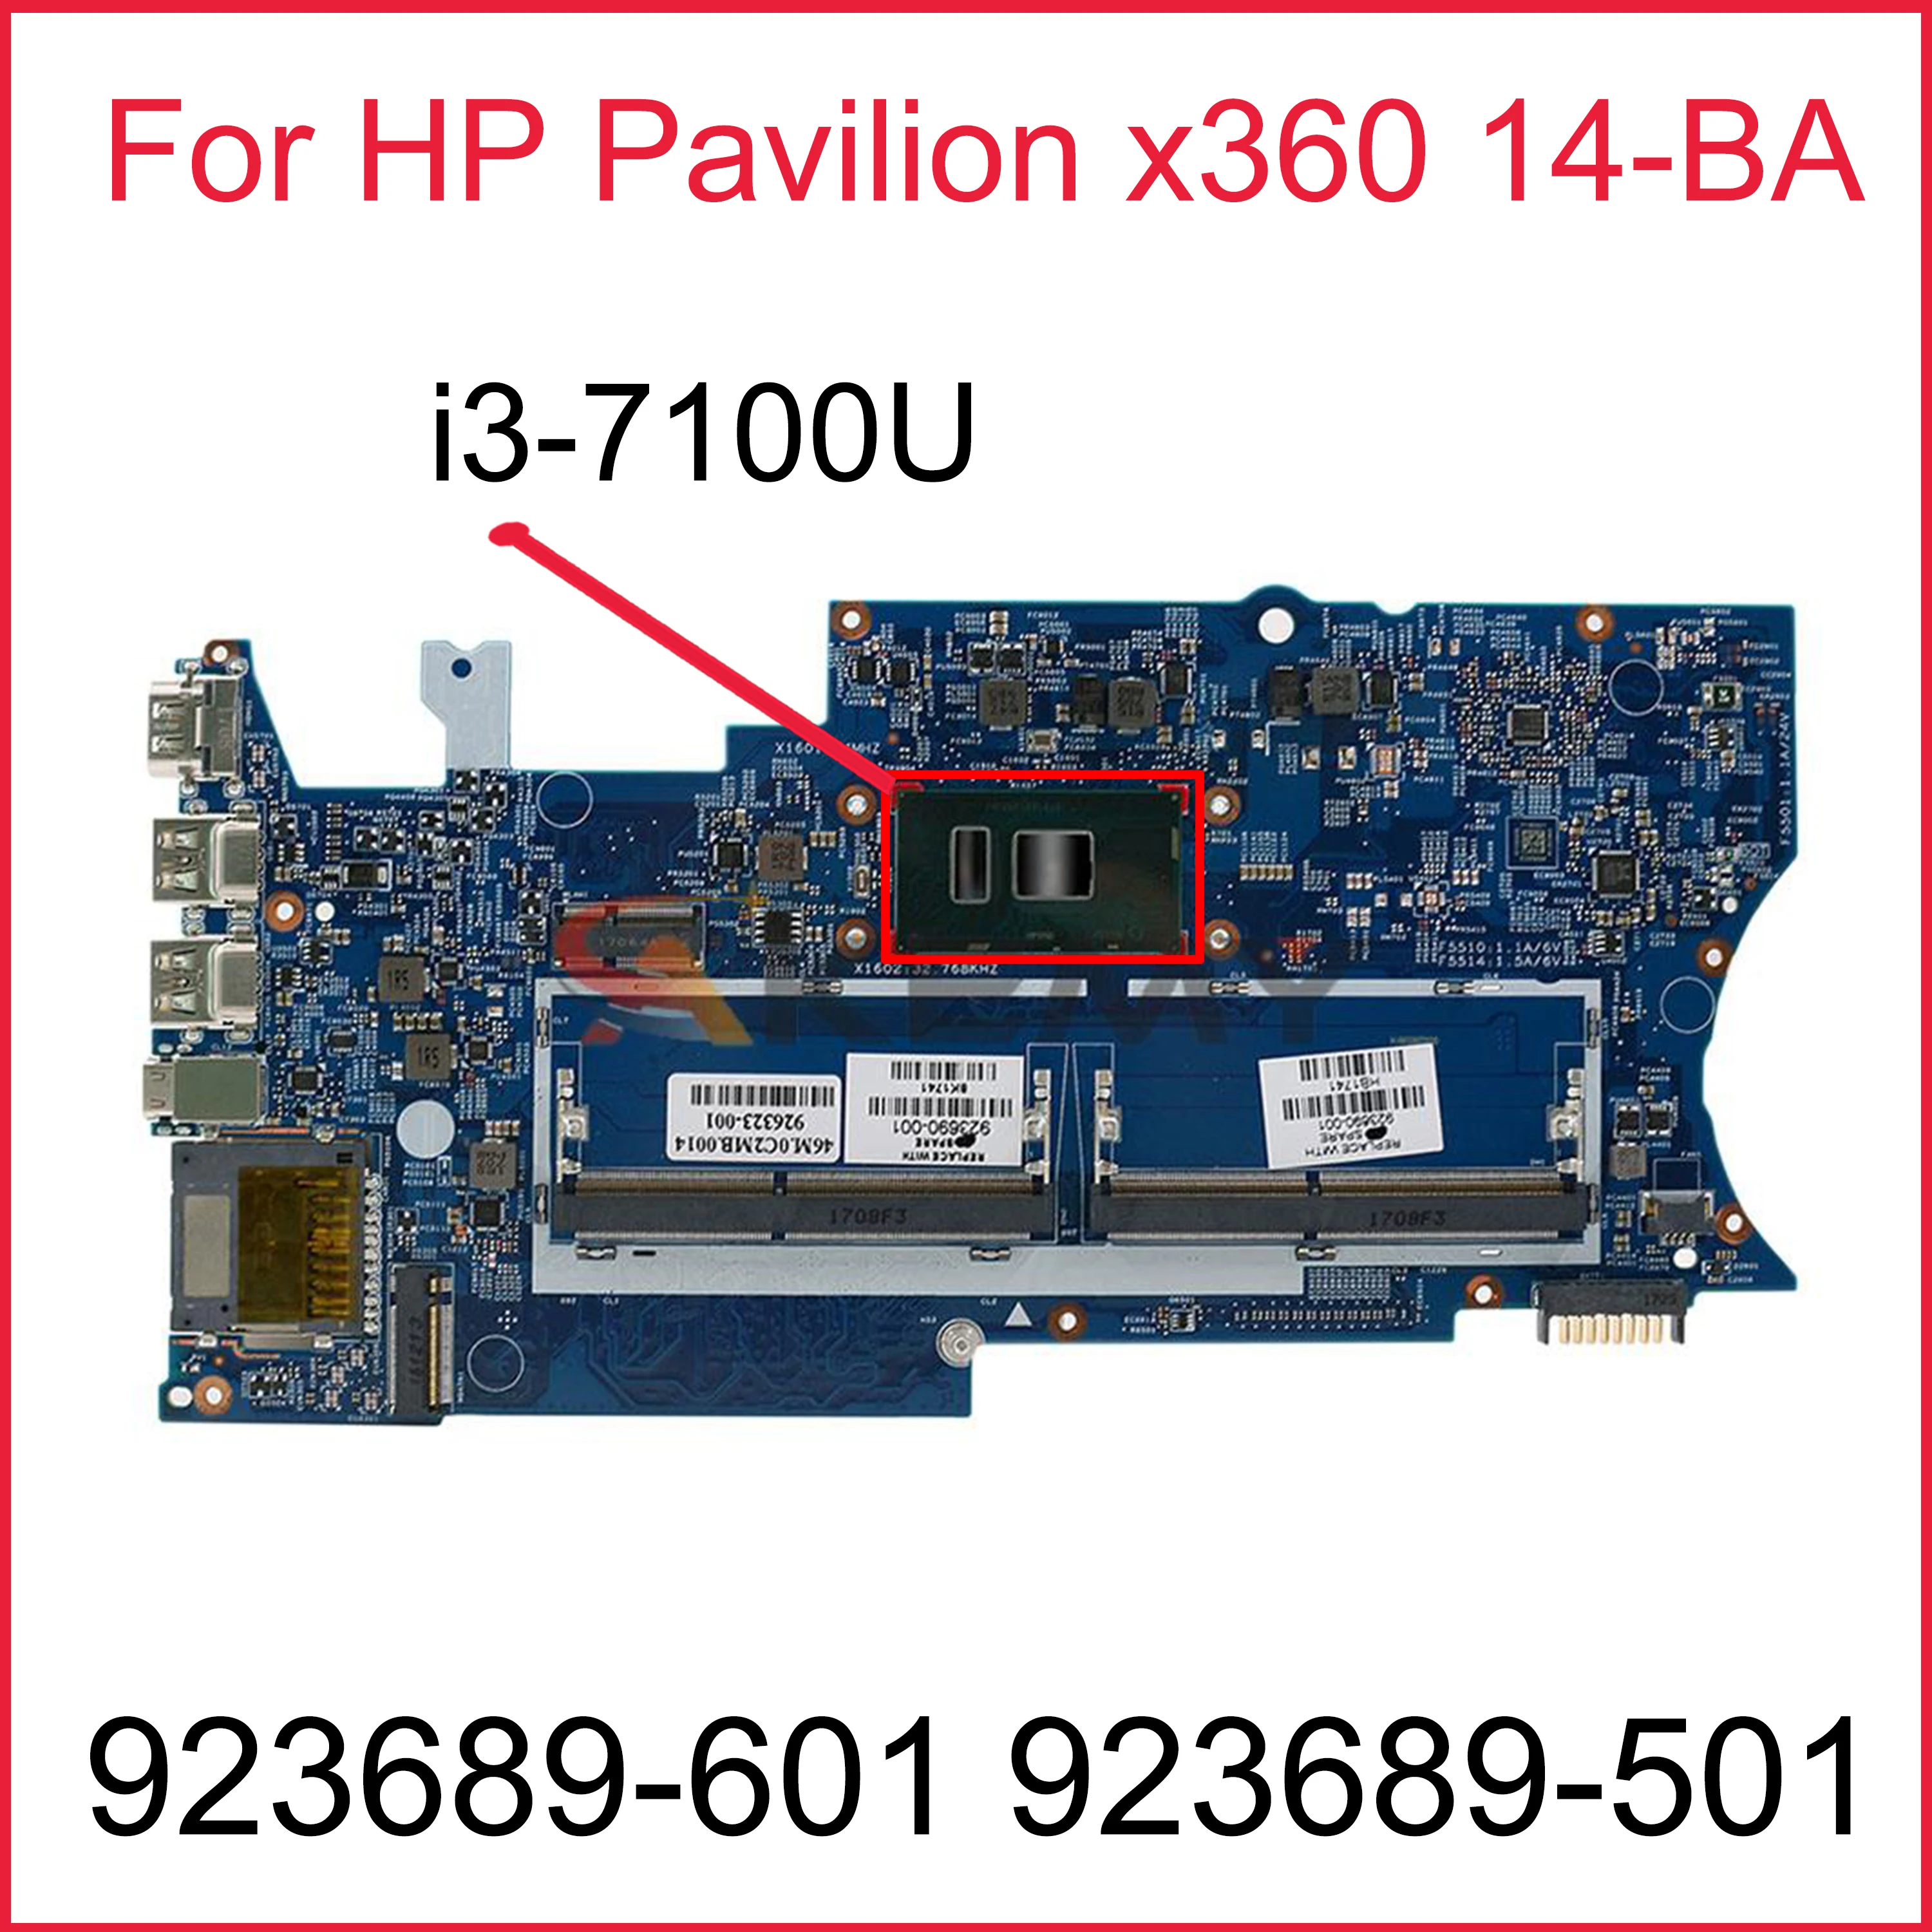 

923689-601 923689-501 For HP Pavilion X360 14-BA I3-7100U Laptop motherboard 16872-1 448.0C203.0011 SR343 DDR4 Mainboard